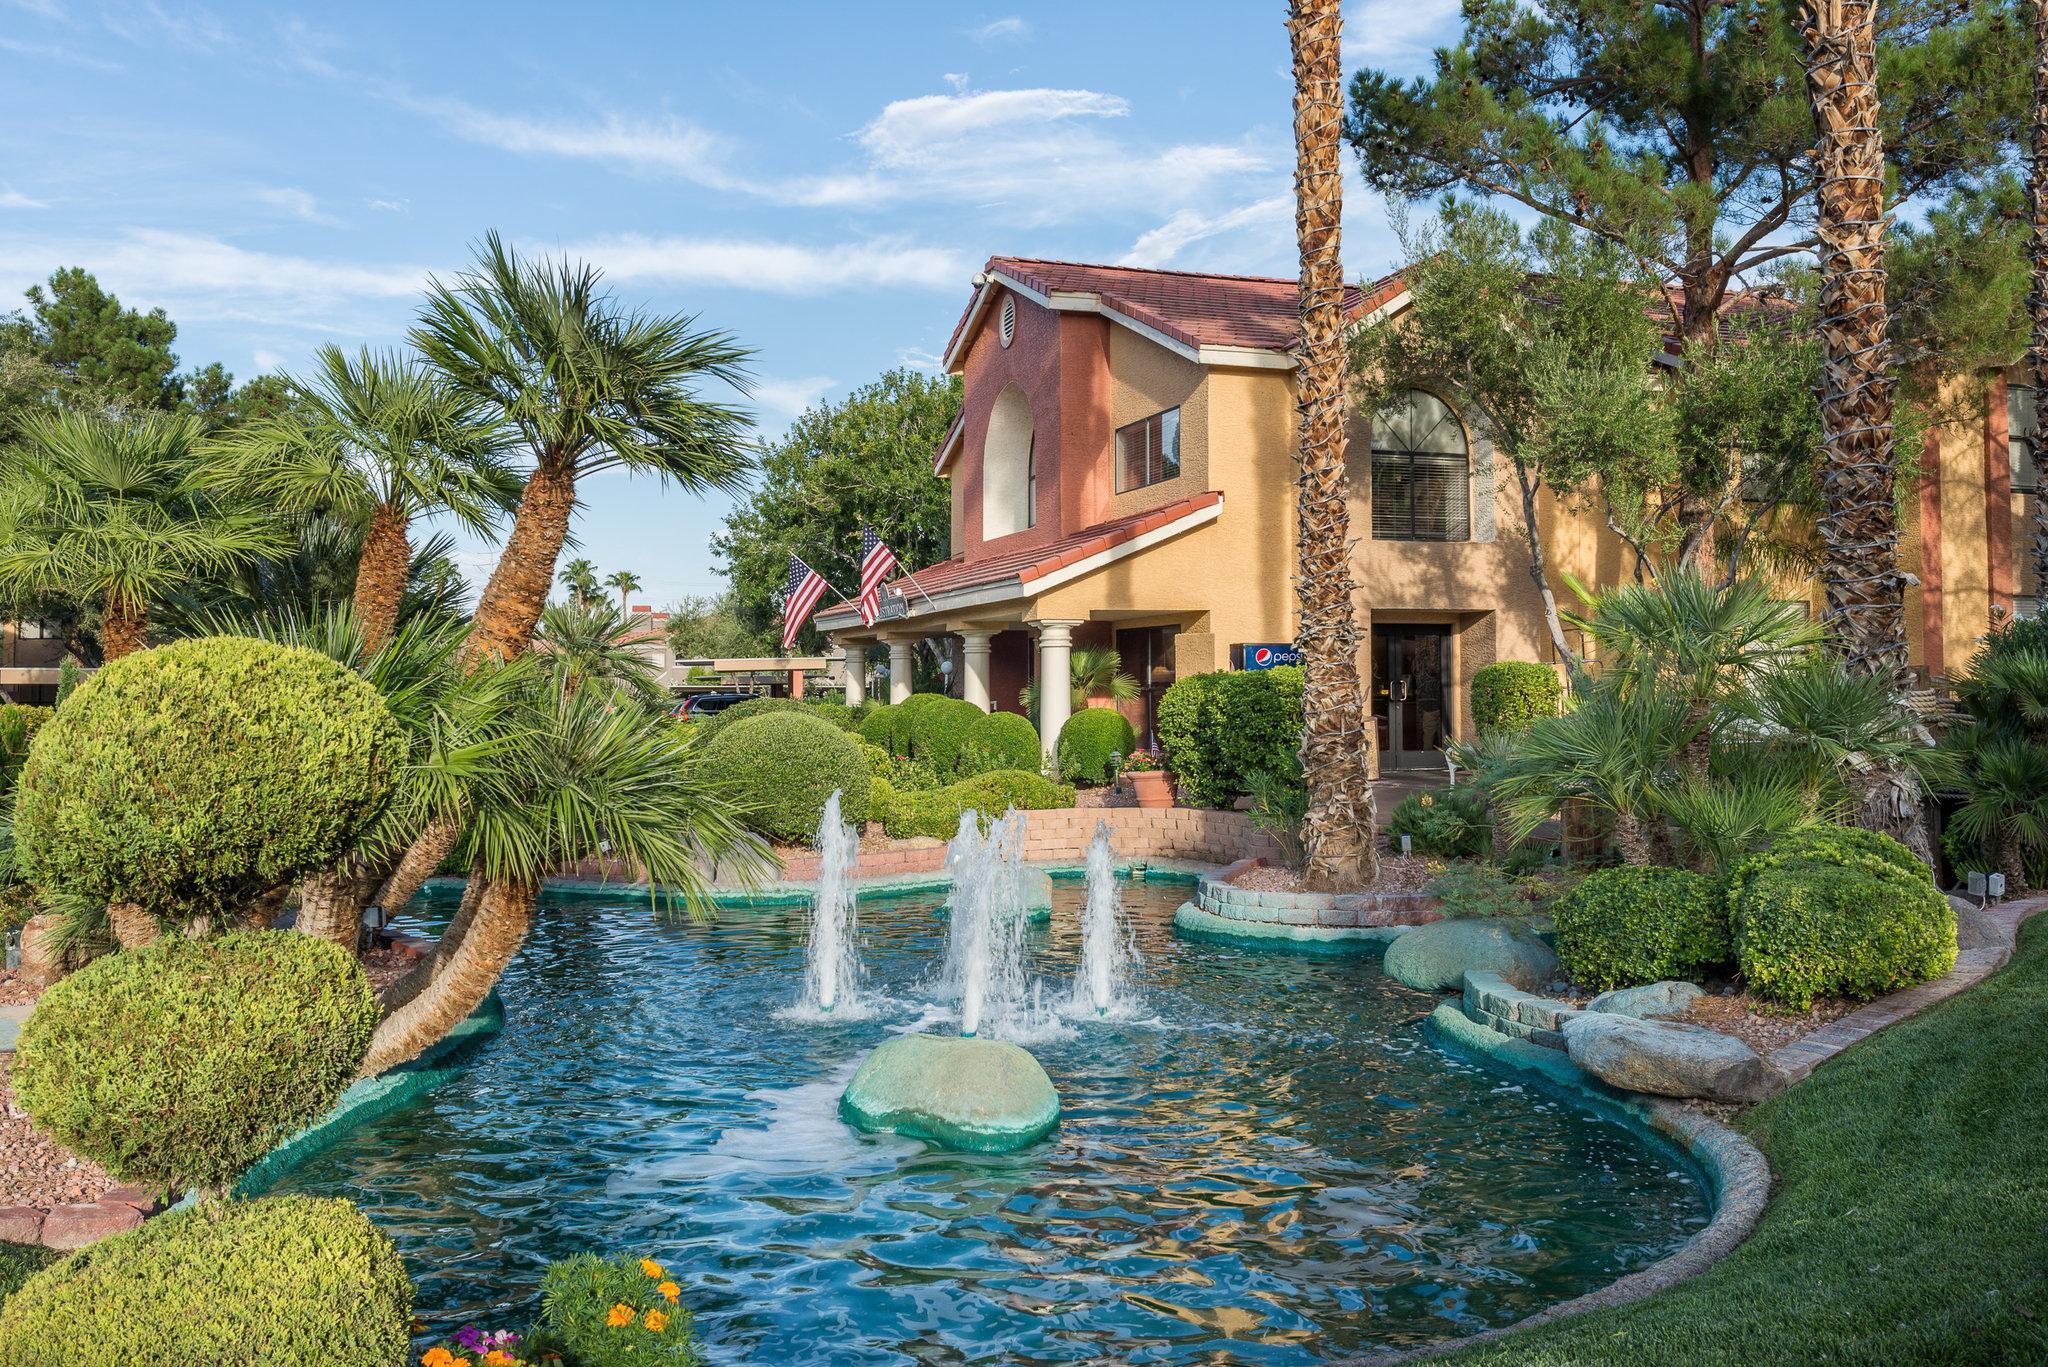 Westgate Flamingo Bay Resort Las Vegas Bagian luar foto